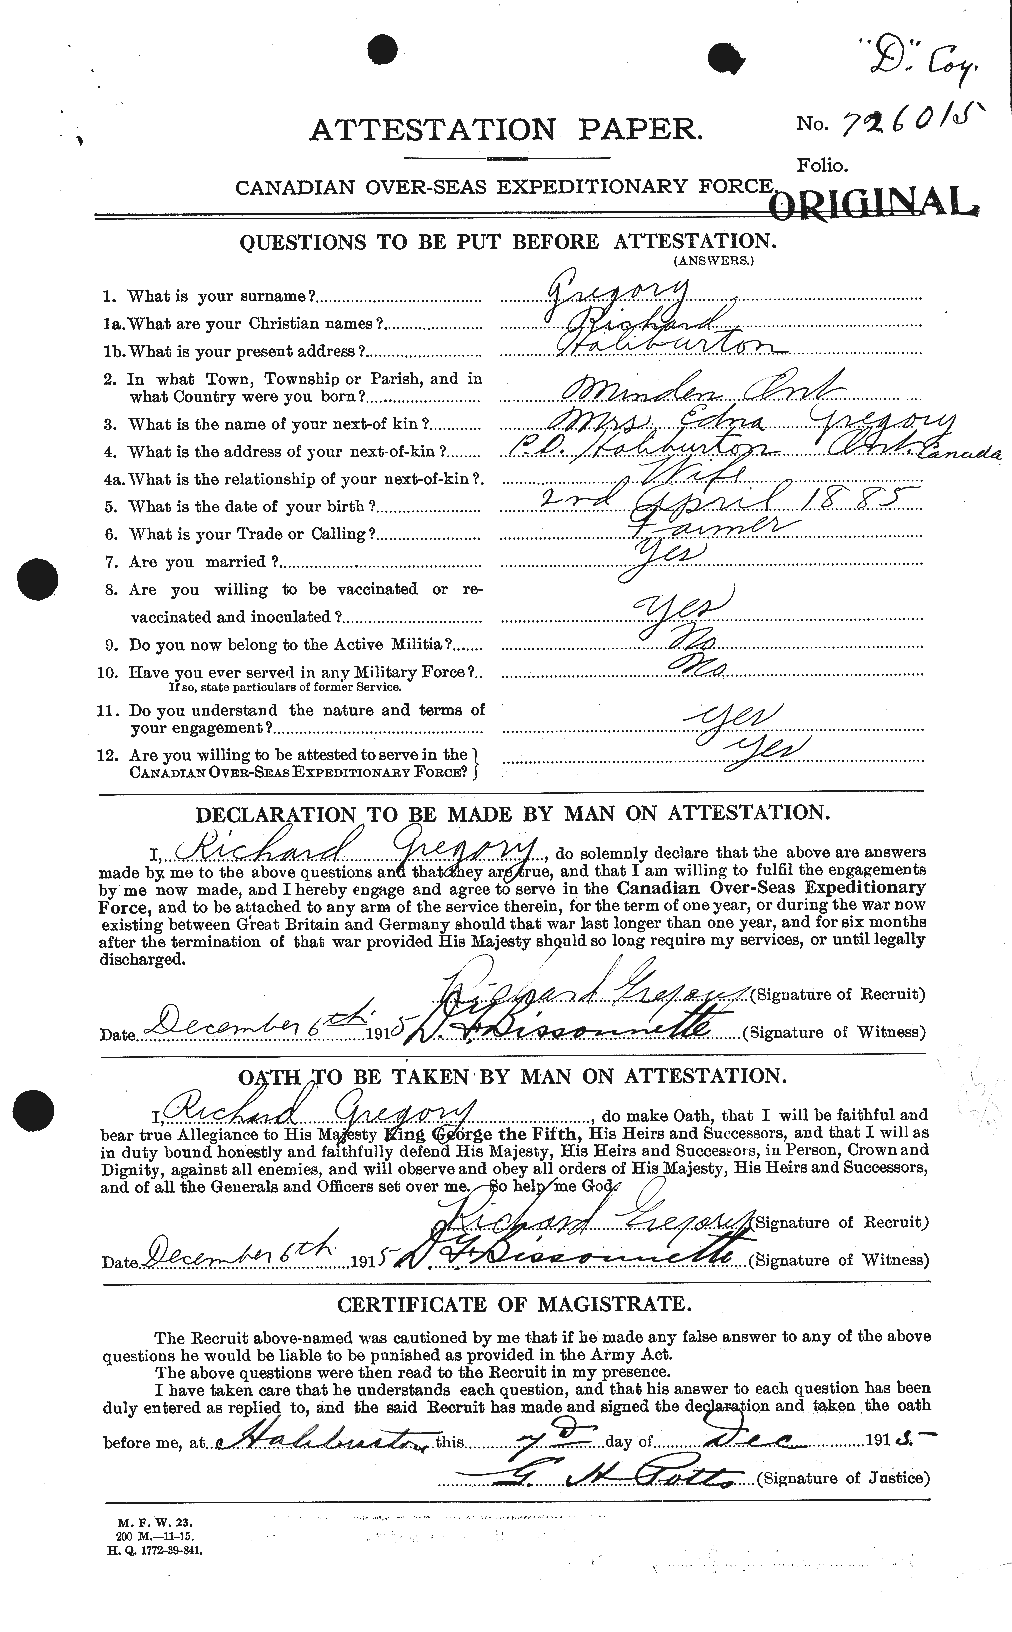 Dossiers du Personnel de la Première Guerre mondiale - CEC 363019a